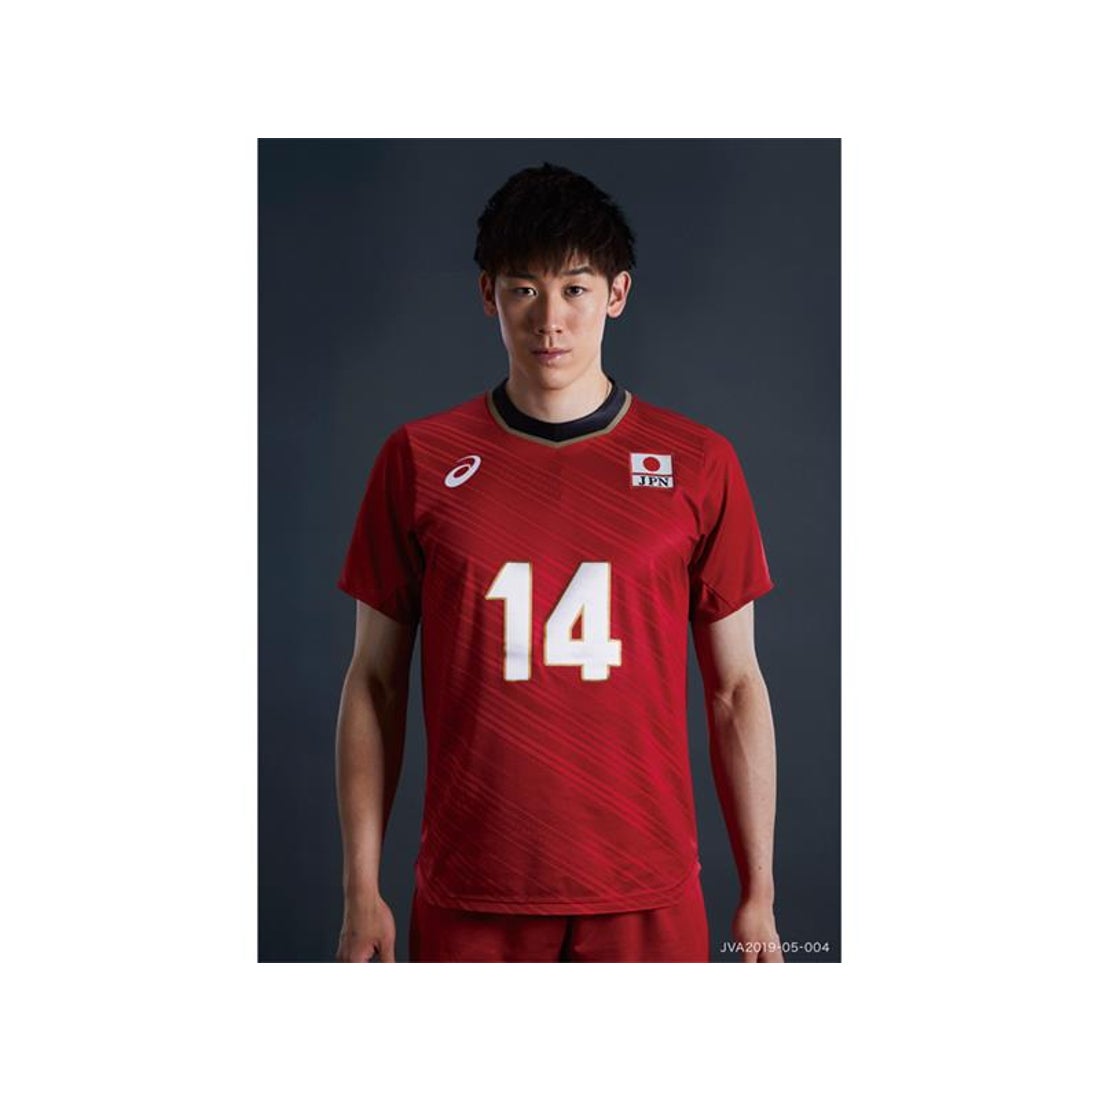 アシックス バレーボール男子日本代表チーム オーセンティックシャツ(レッド) #14 石川祐希